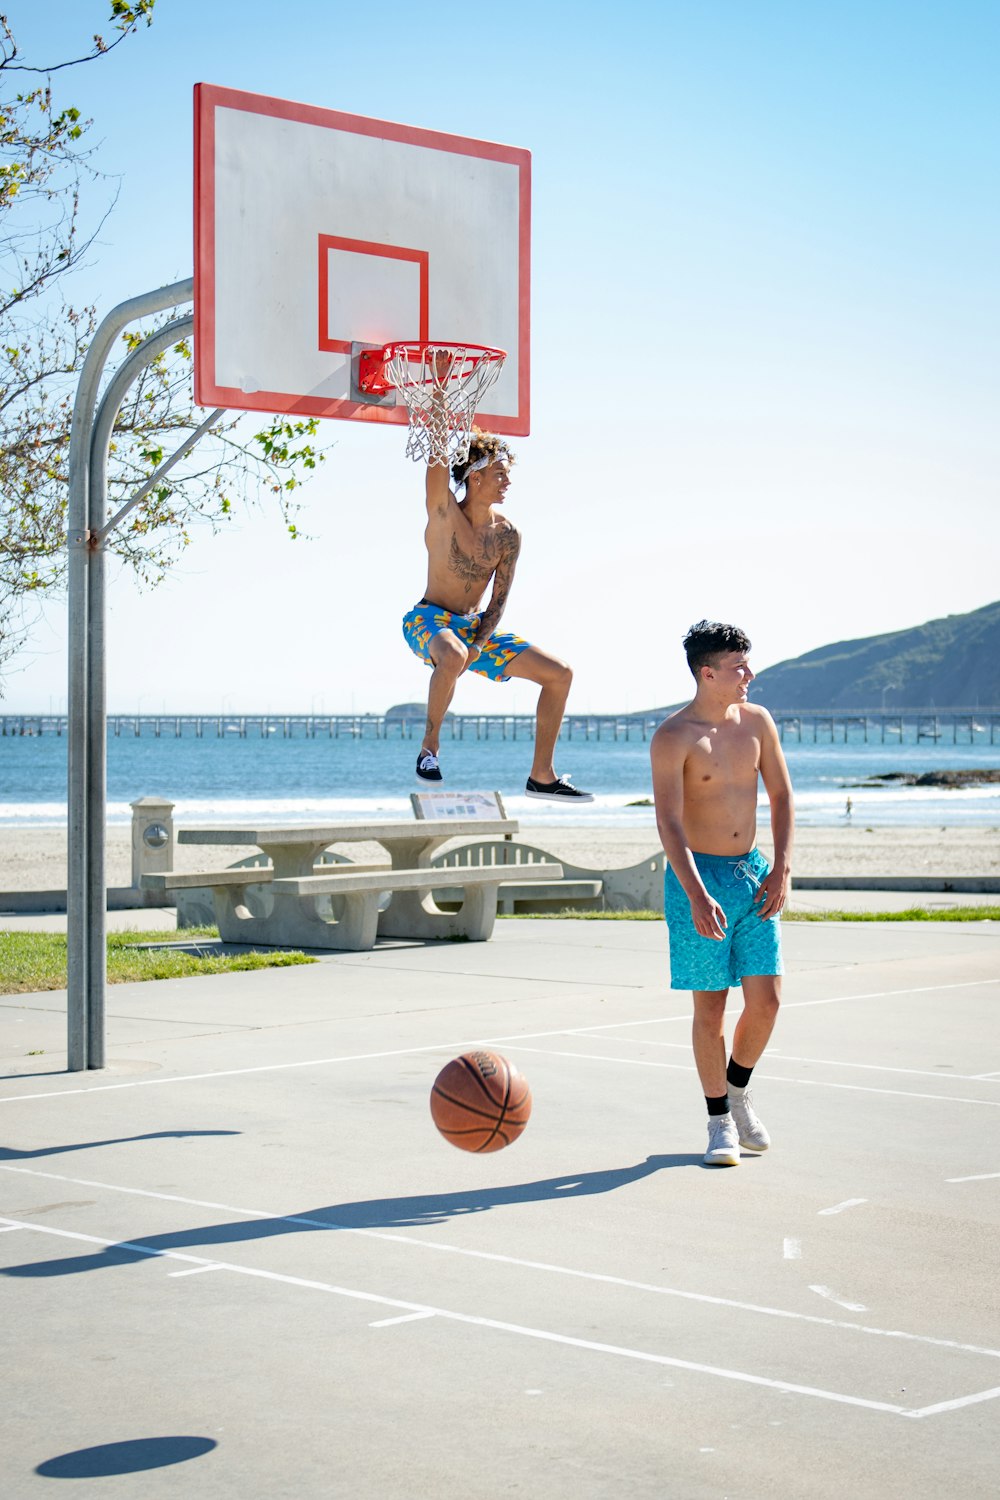 昼間、バスケットボールコートでバスケットボールをする2人の男性